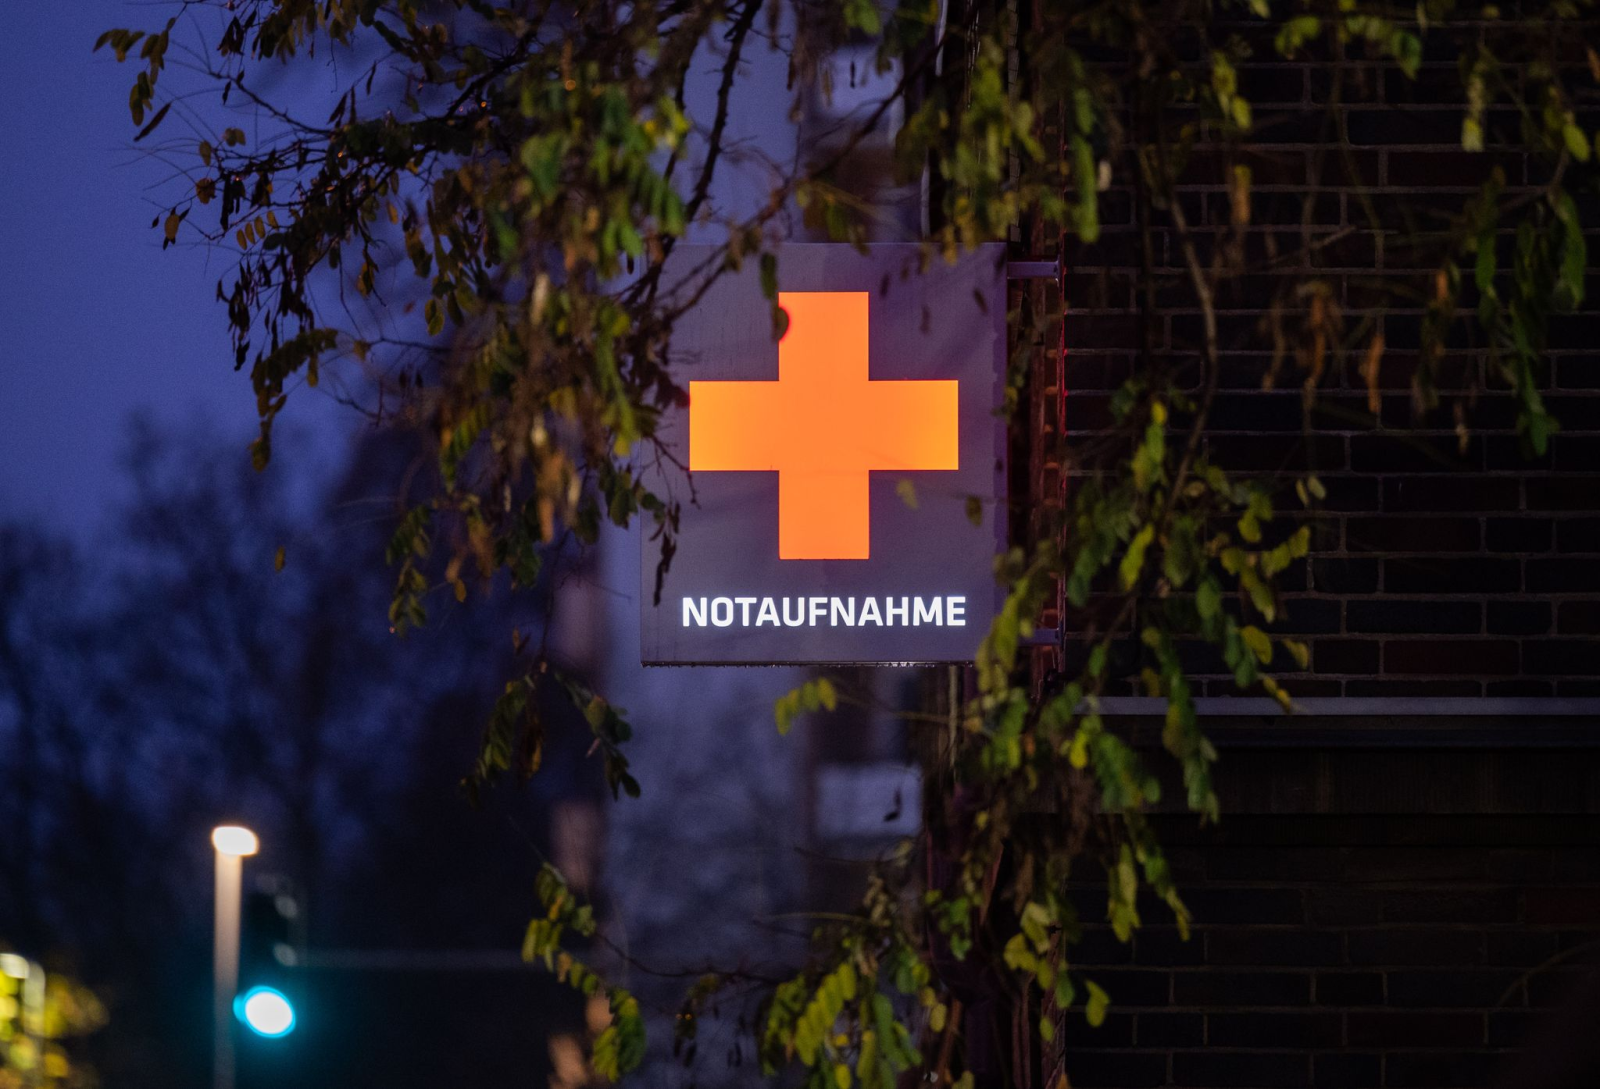 Ein Schild weist auf die Notaufnahme eines Krankenhauses hin.